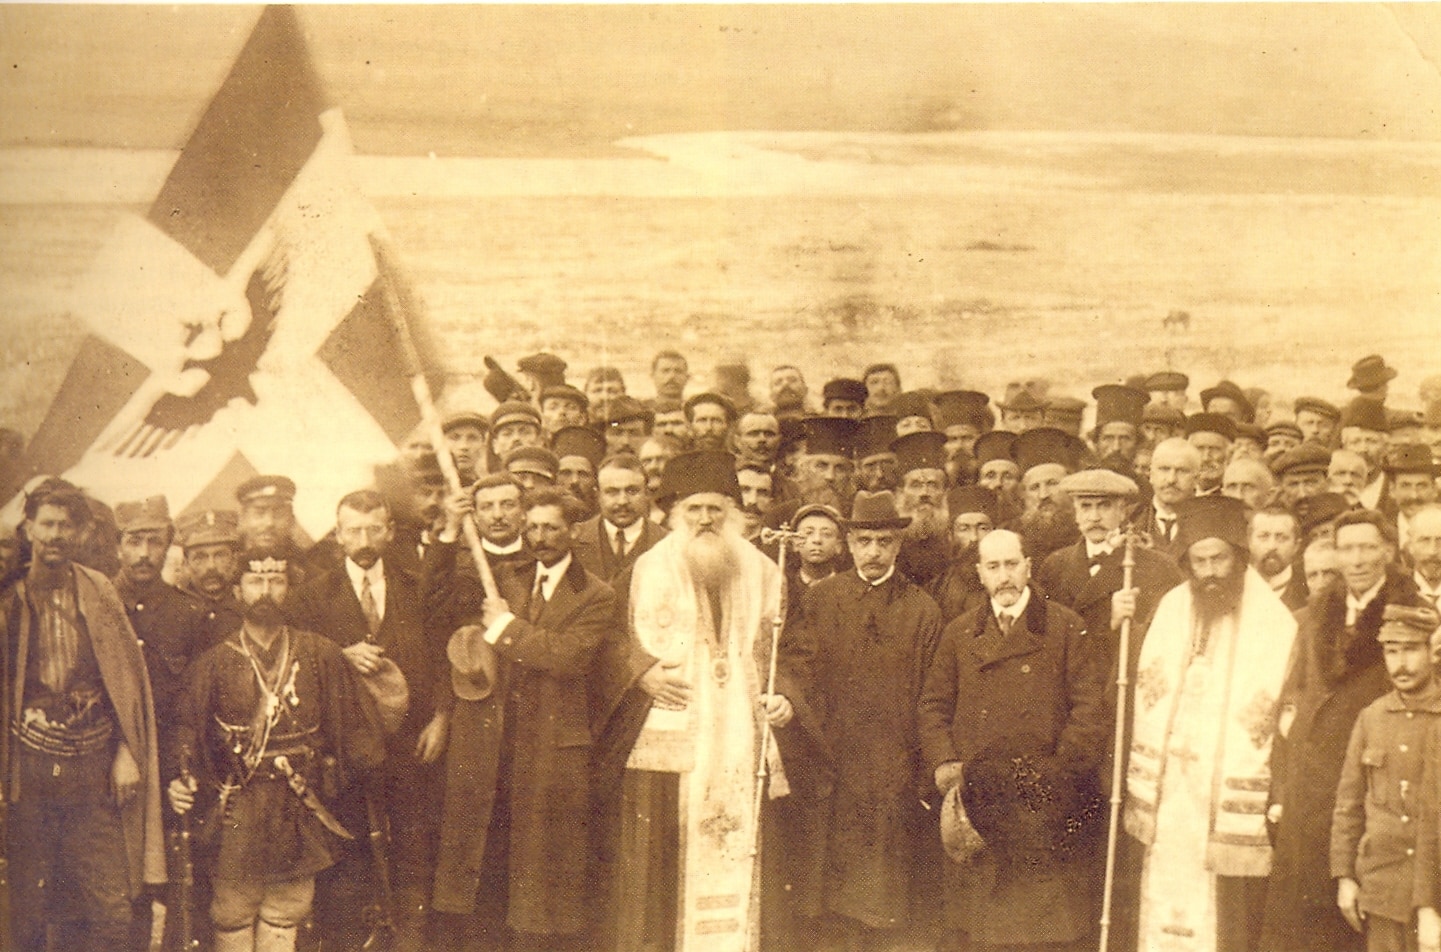 Επίσημη ανακήρυξη Ανεξαρτησίας Αργυροκάστρου 1914